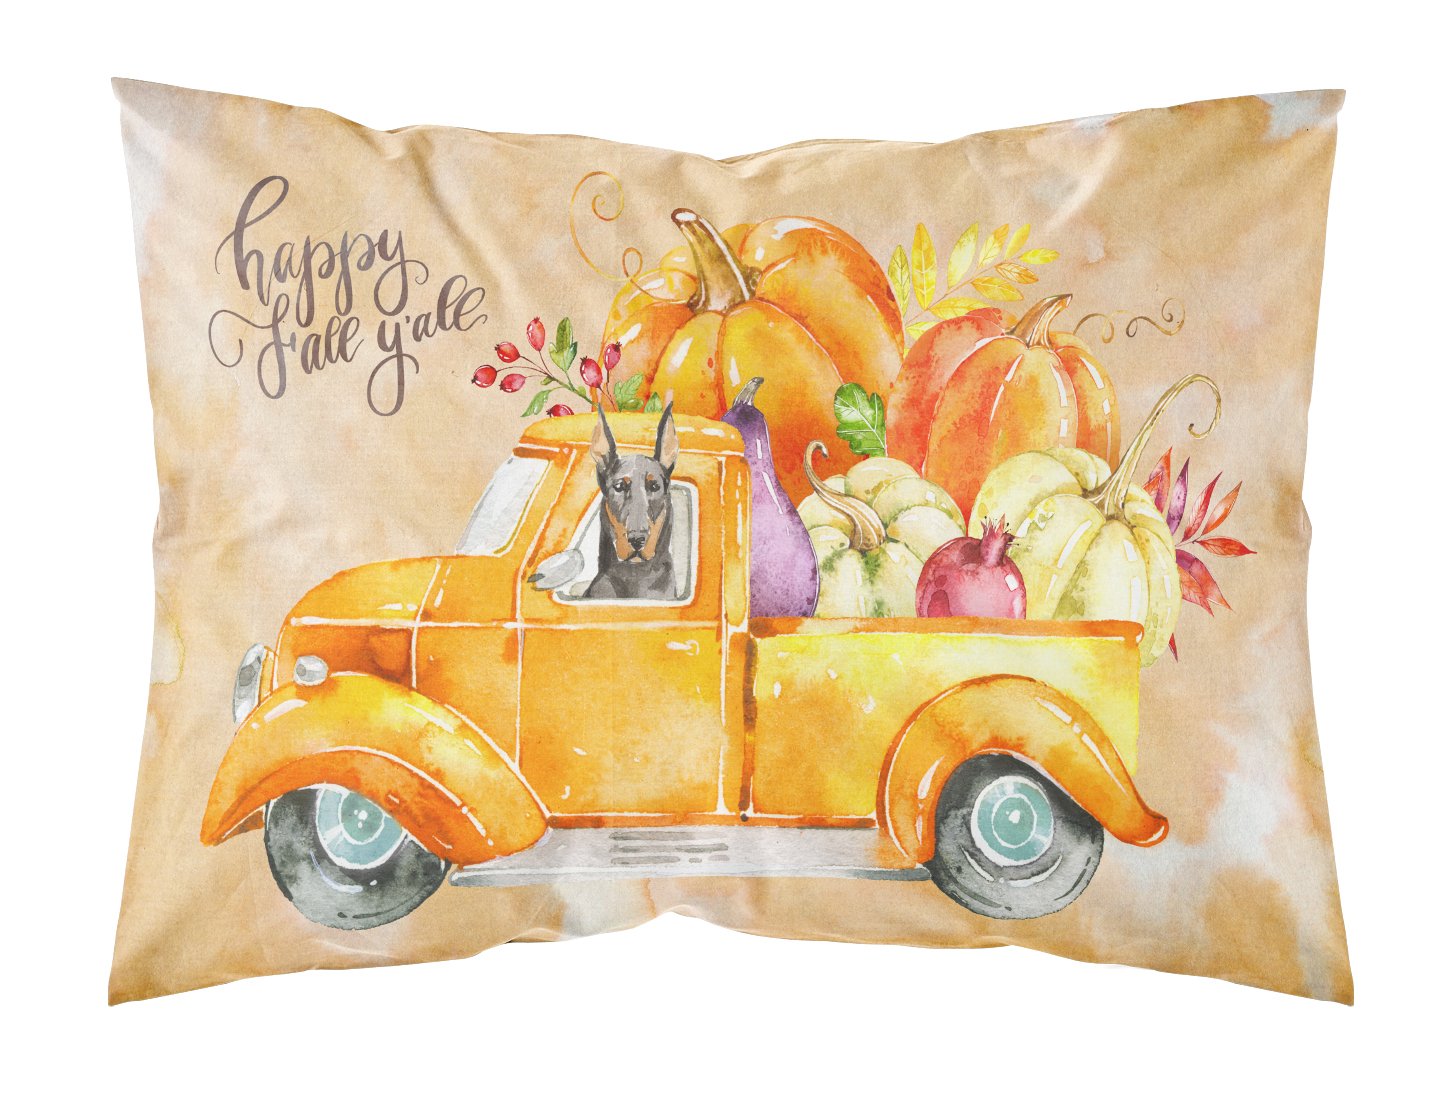 Fall Harvest Doberman Pinscher Fabric Standard Pillowcase CK2616PILLOWCASE by Caroline's Treasures